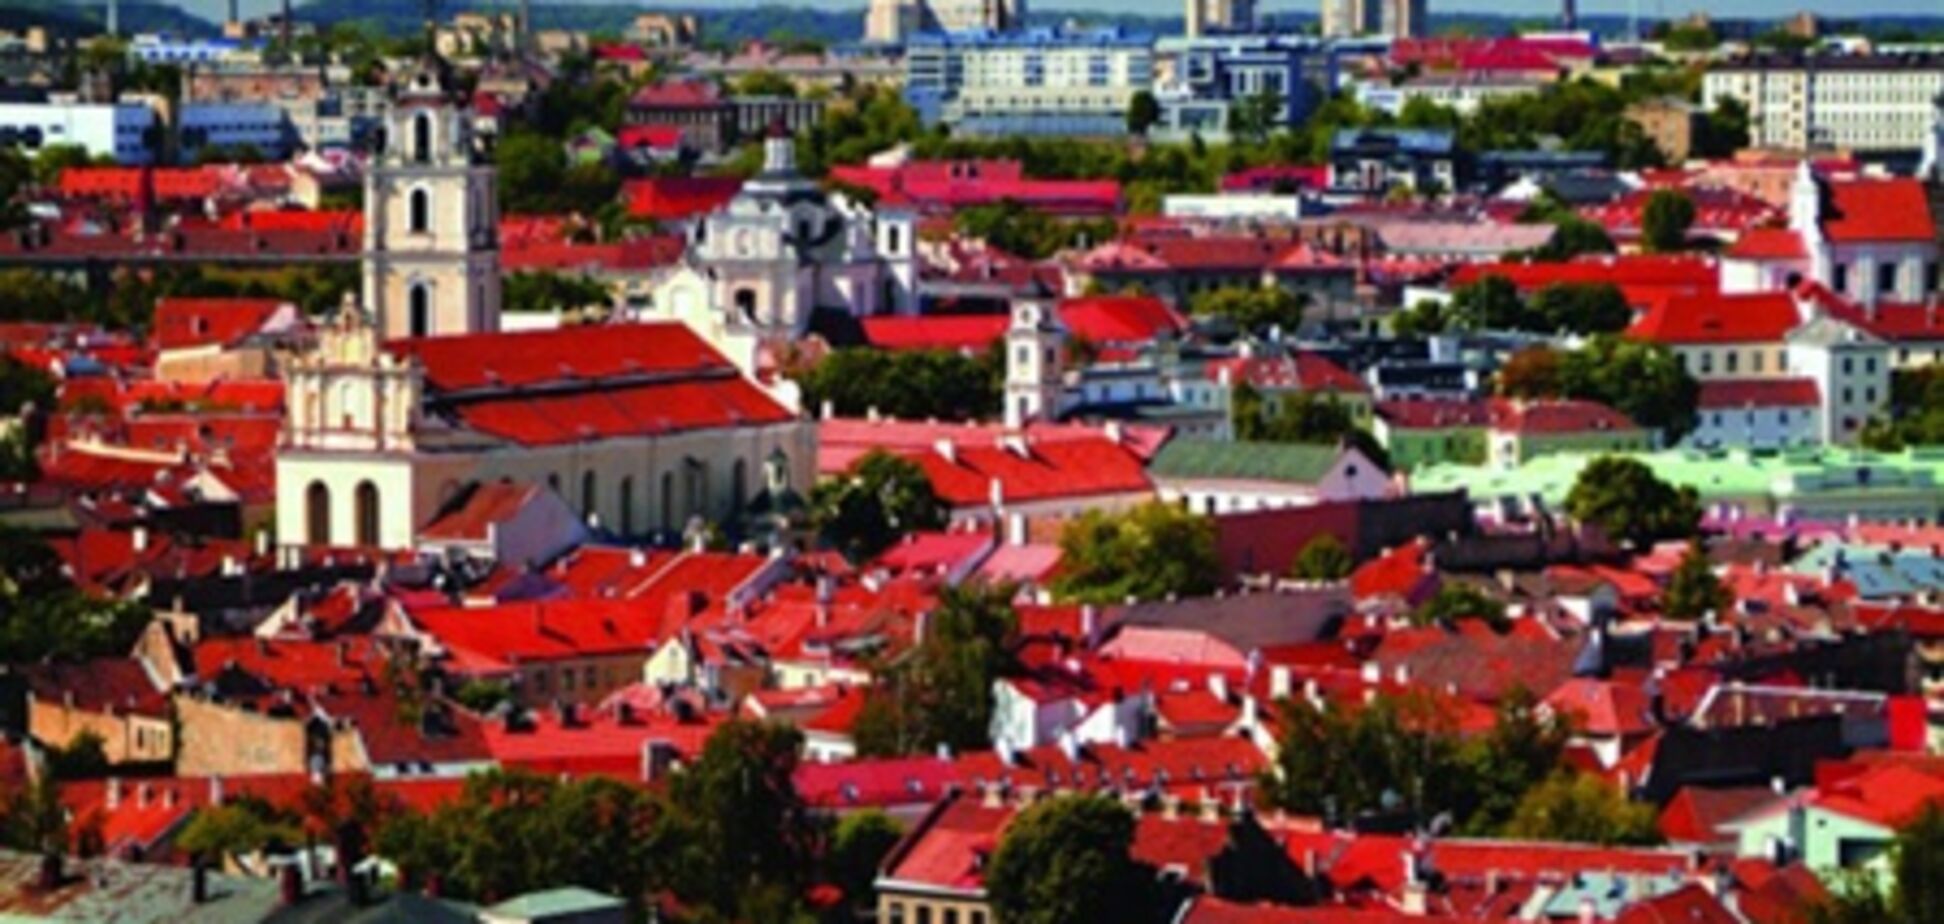 Множество бесплатных мероприятий - в День города в Вильнюсе